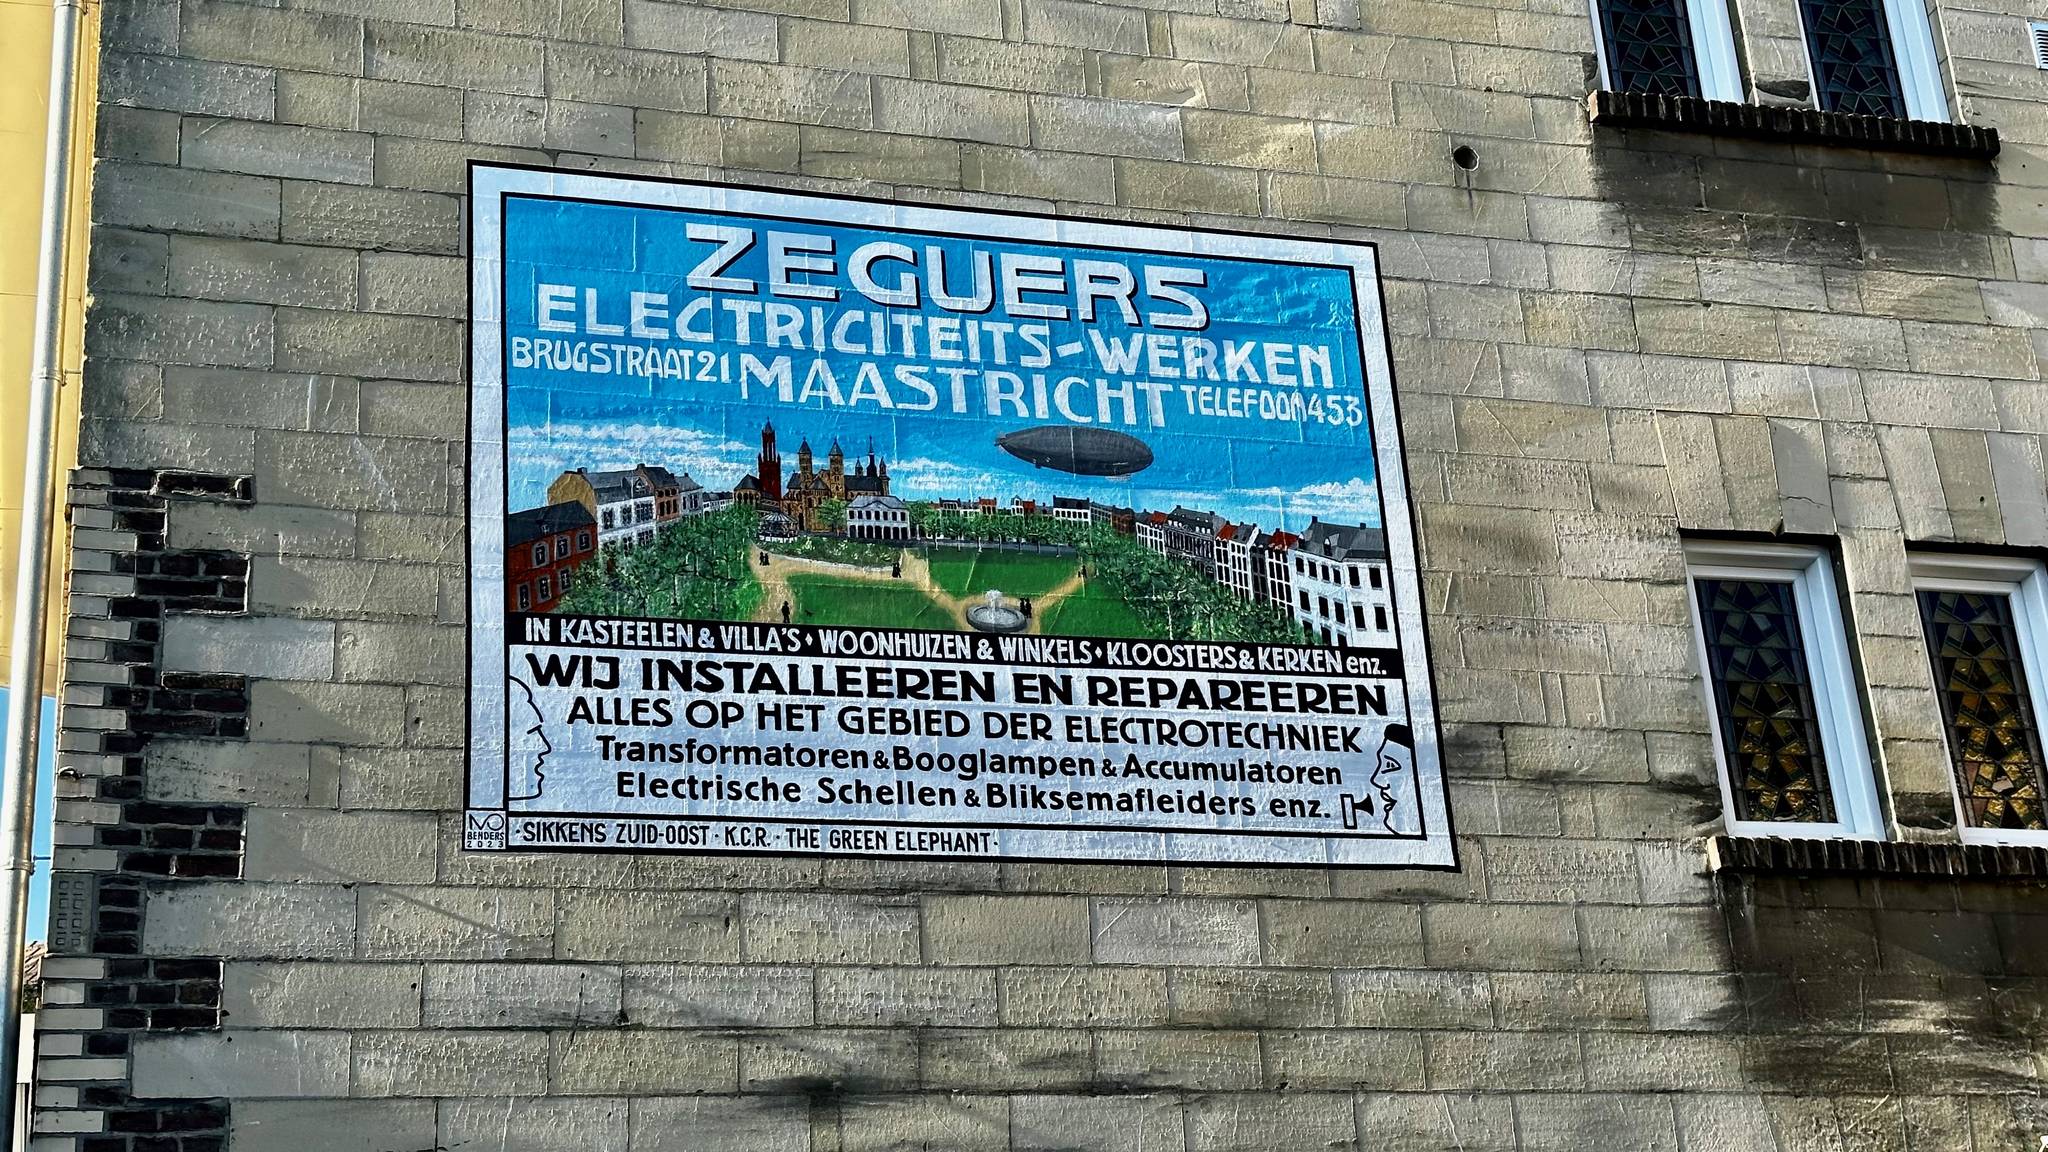 Ivo Benders&mdash;Zeguers Electriciteitswerken Brugstraat 21 Maastricht